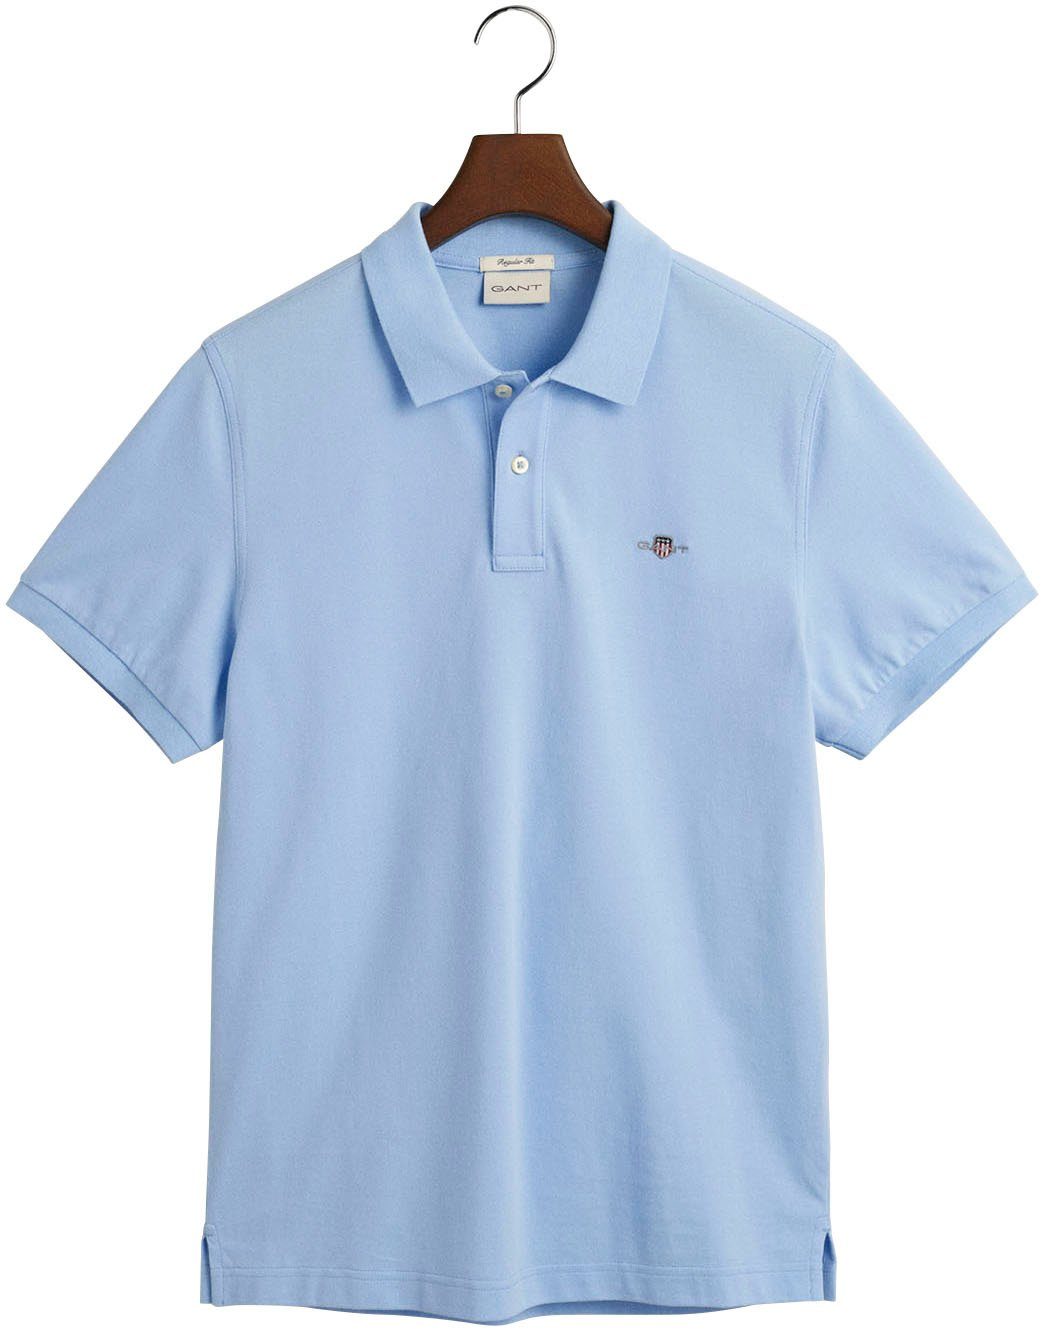 Poloshirt PIQUE mit blue SS Logostickerei Gant der REG auf SHIELD POLO Brust capri